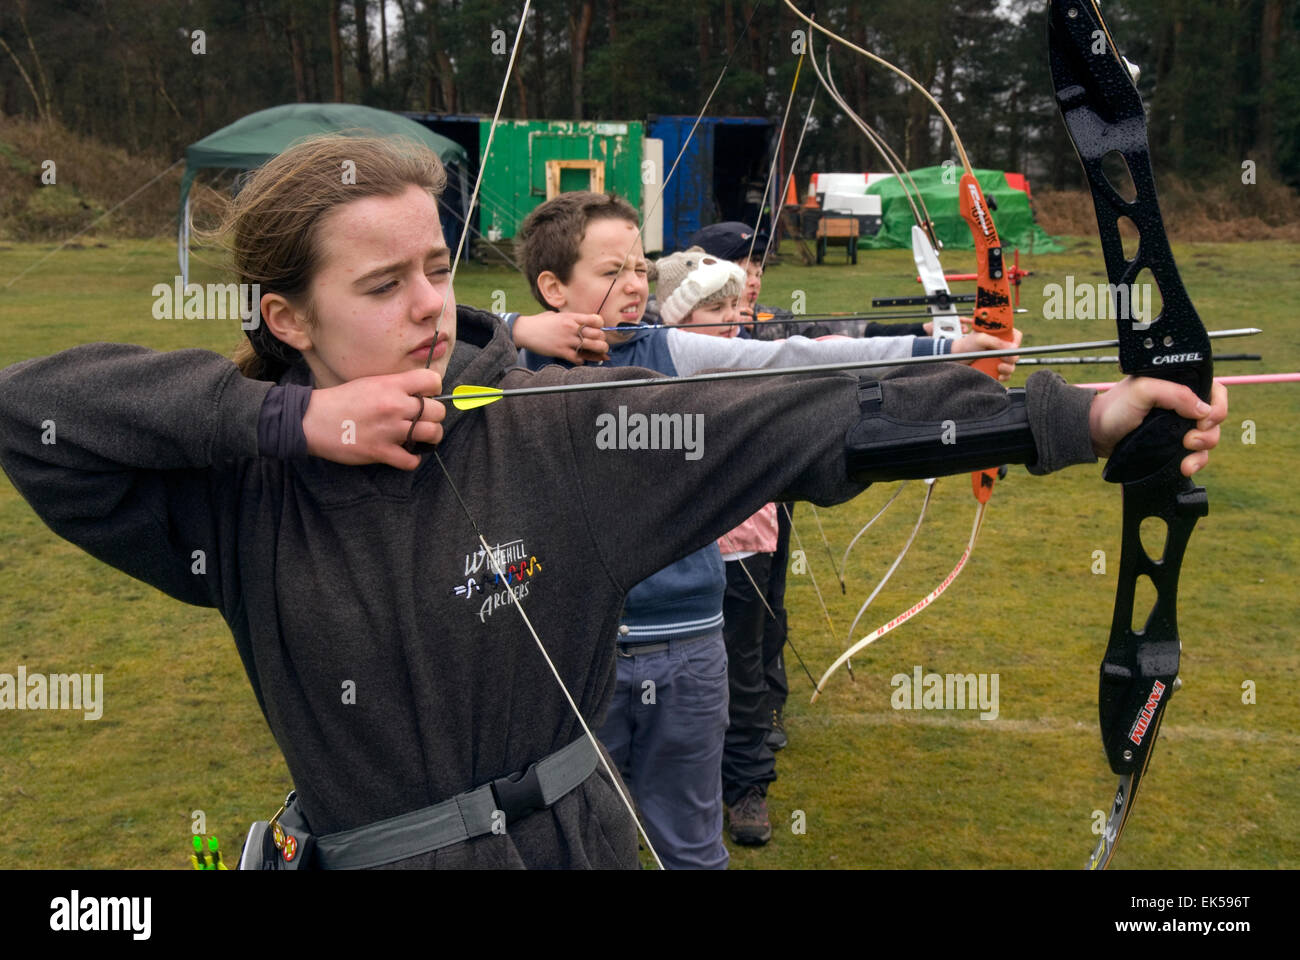 Les enfants de moins de 14 ans dans la catégorie d'âge s'engagent dans un rapport annuel de tir à l'été, Whitehill shoot, Bordon, Hampshire, Royaume-Uni. Banque D'Images